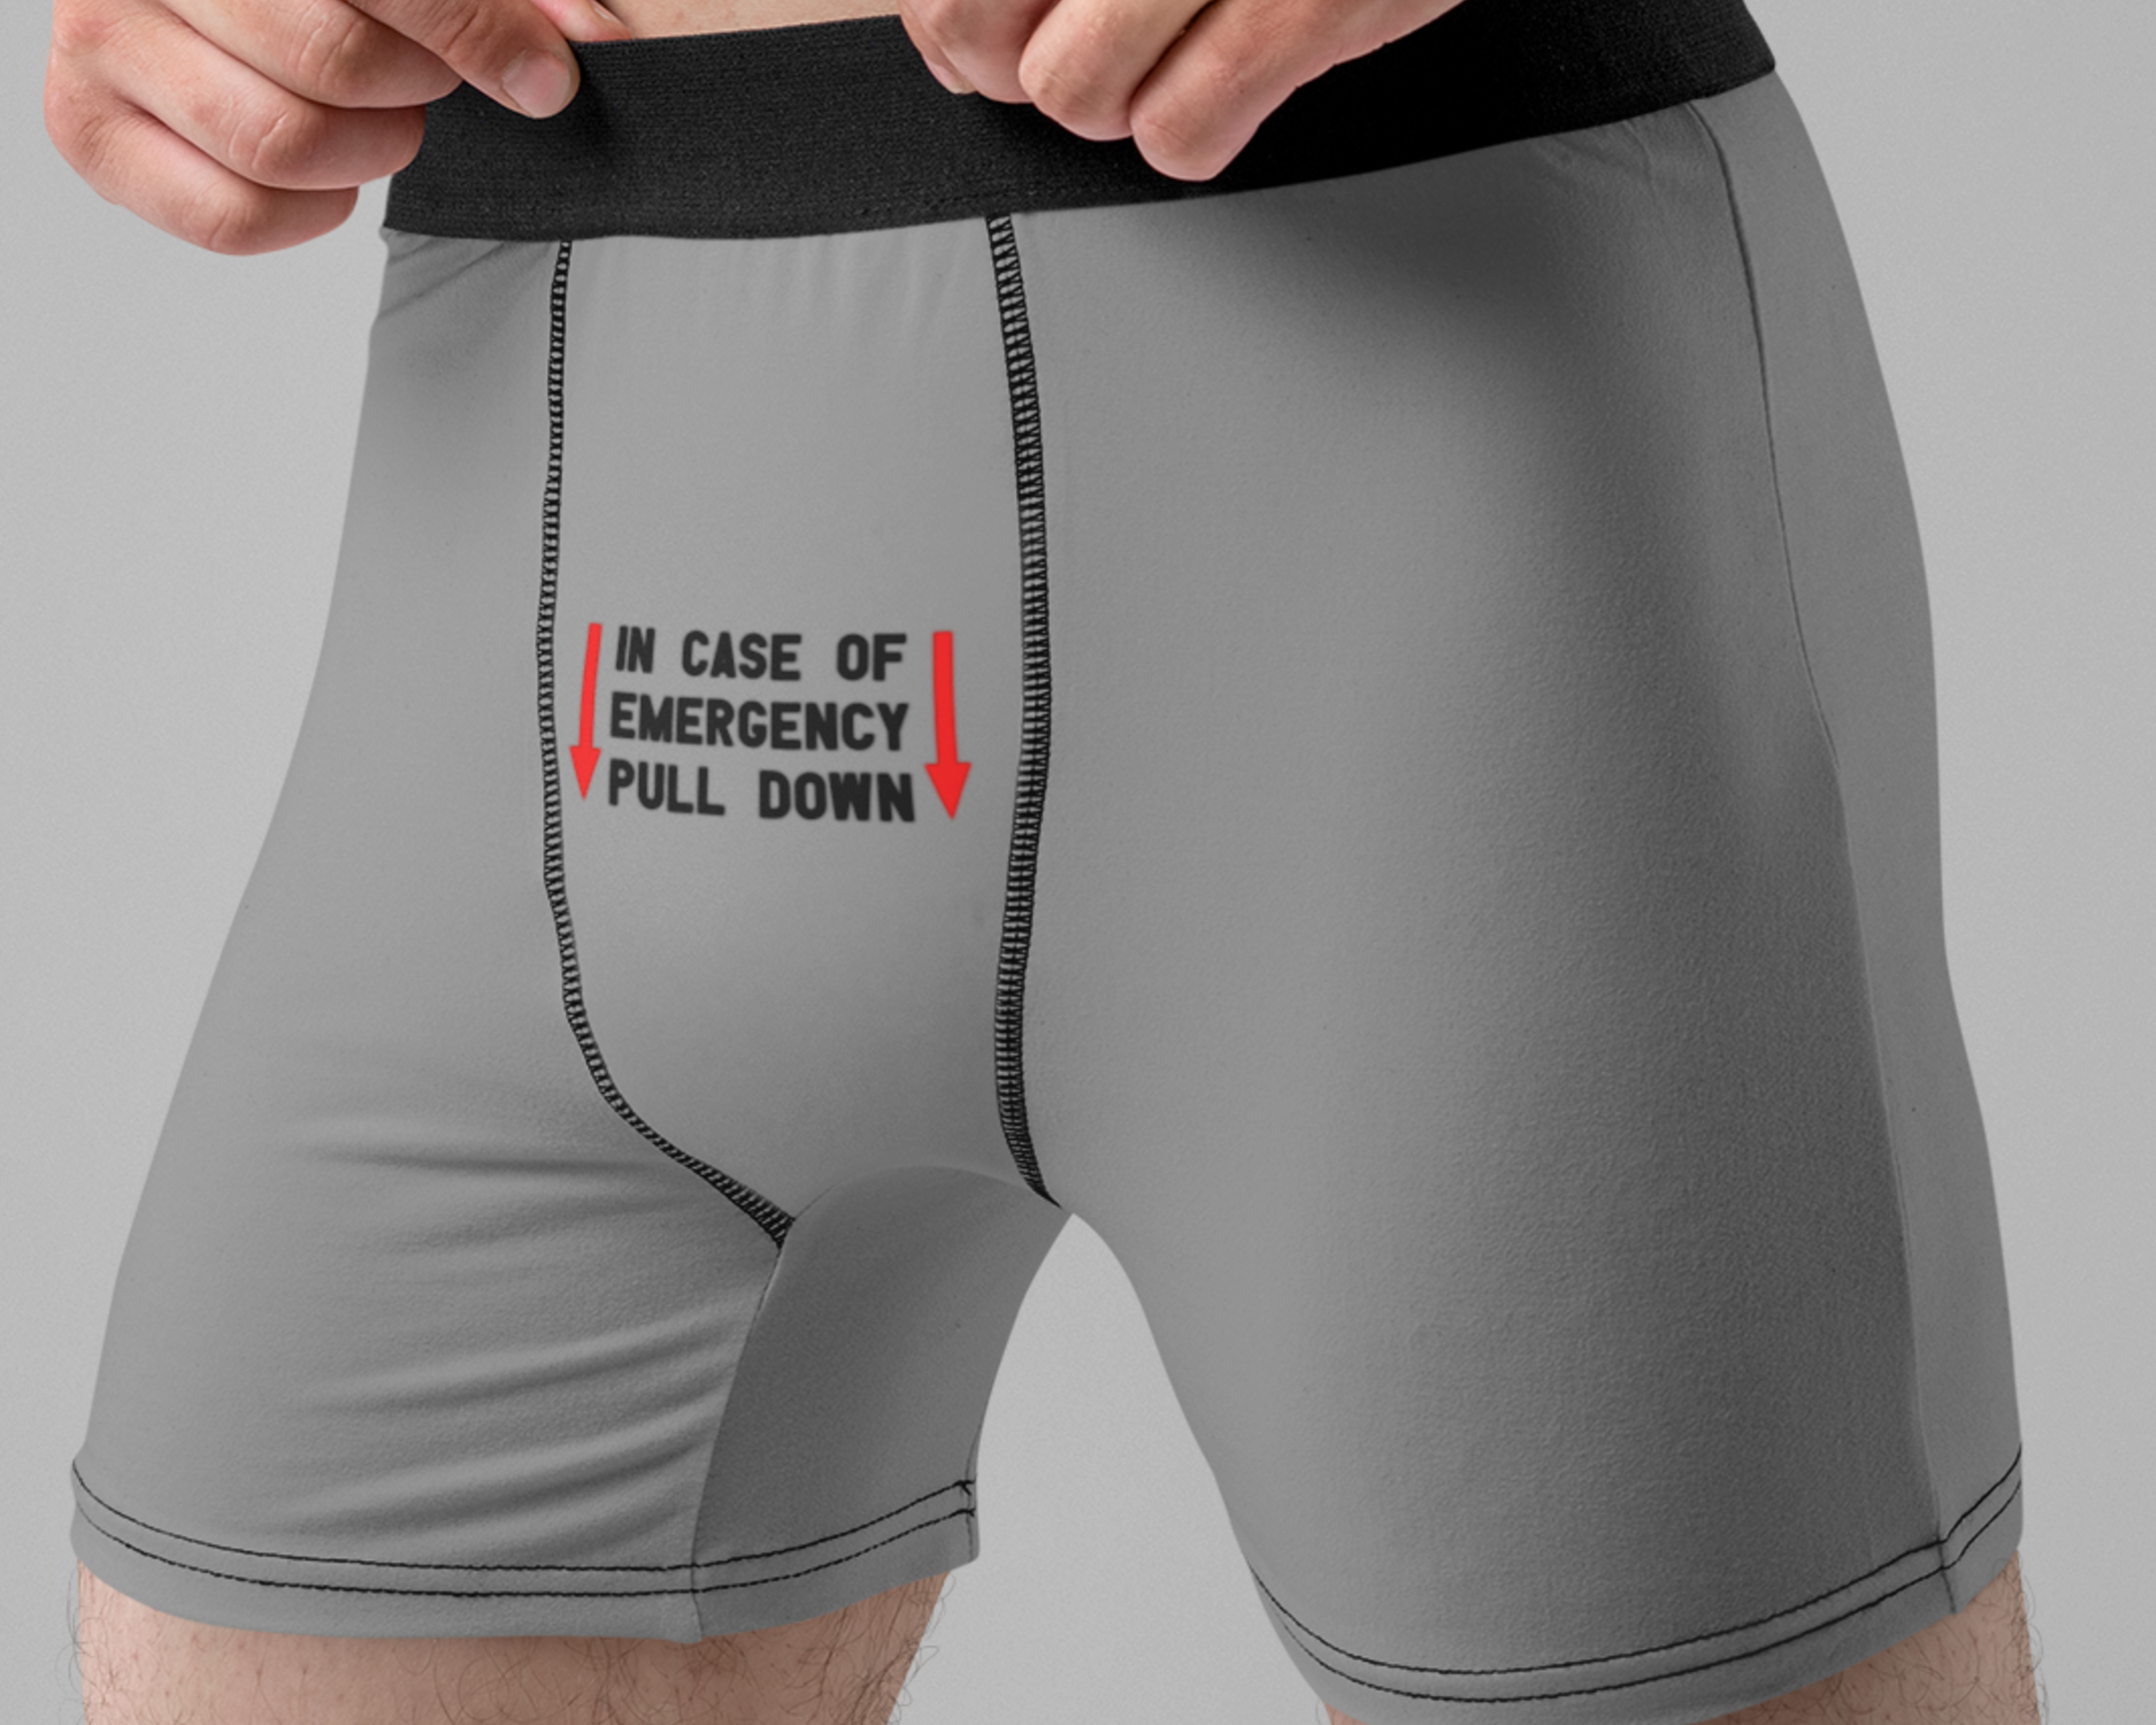 NSFW SVG - In Case of Emergency Pull Down SVG - Men's Underwear